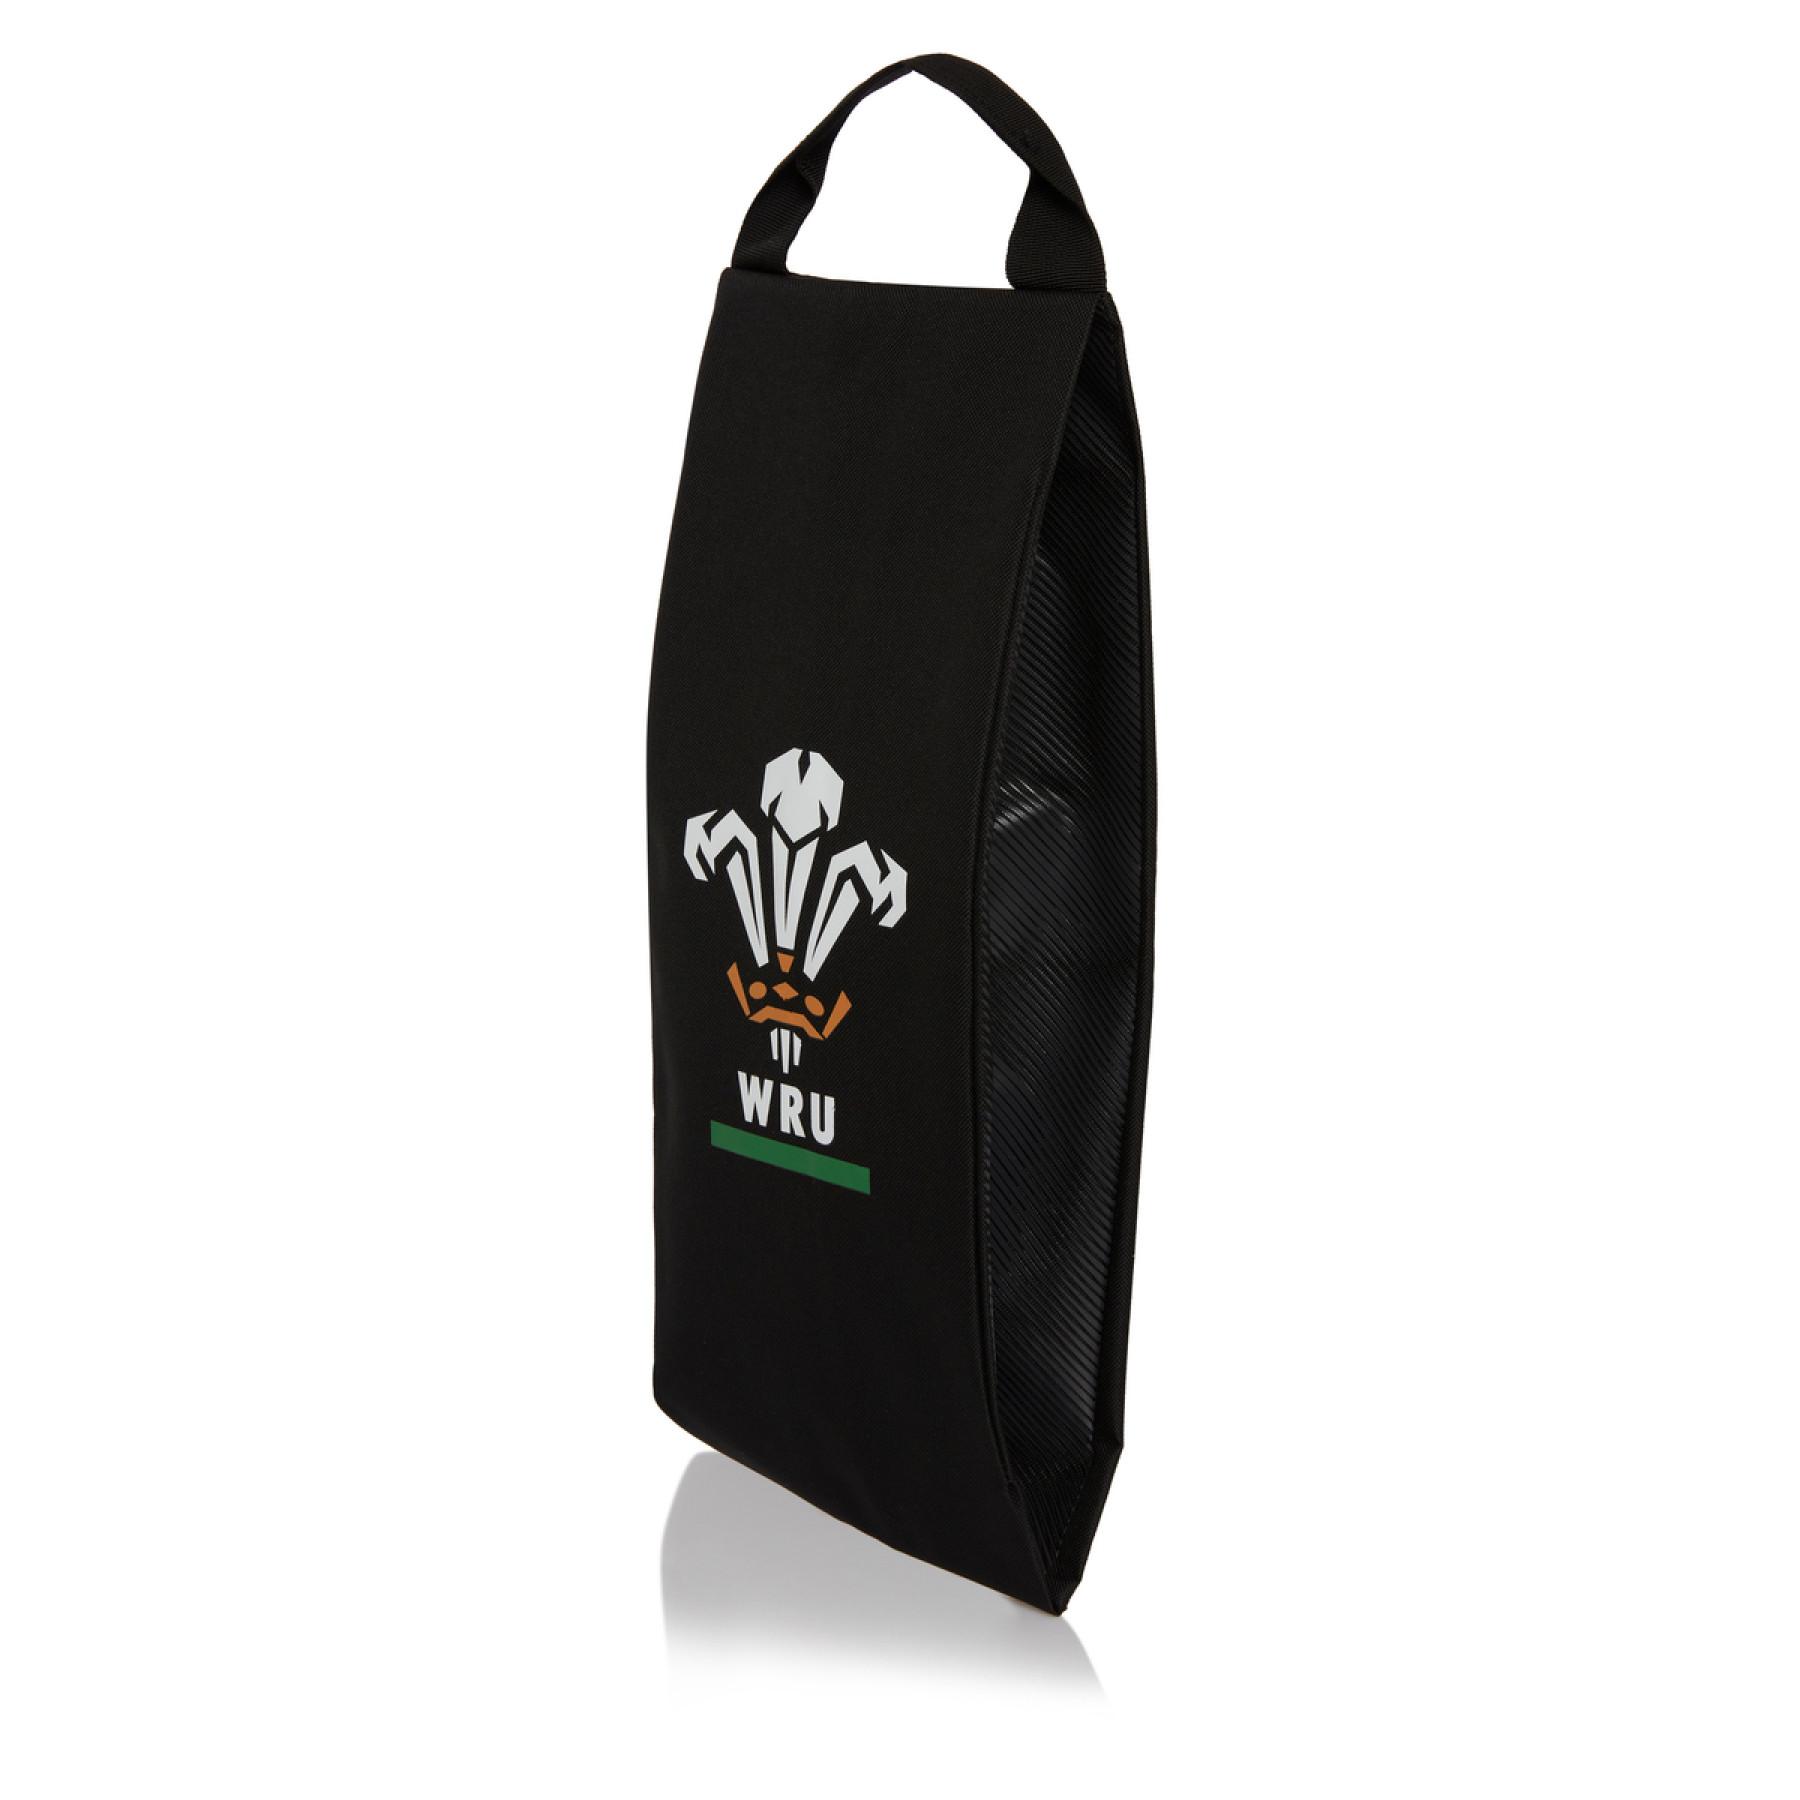 Bag Pays de Galles rugby 2020/21